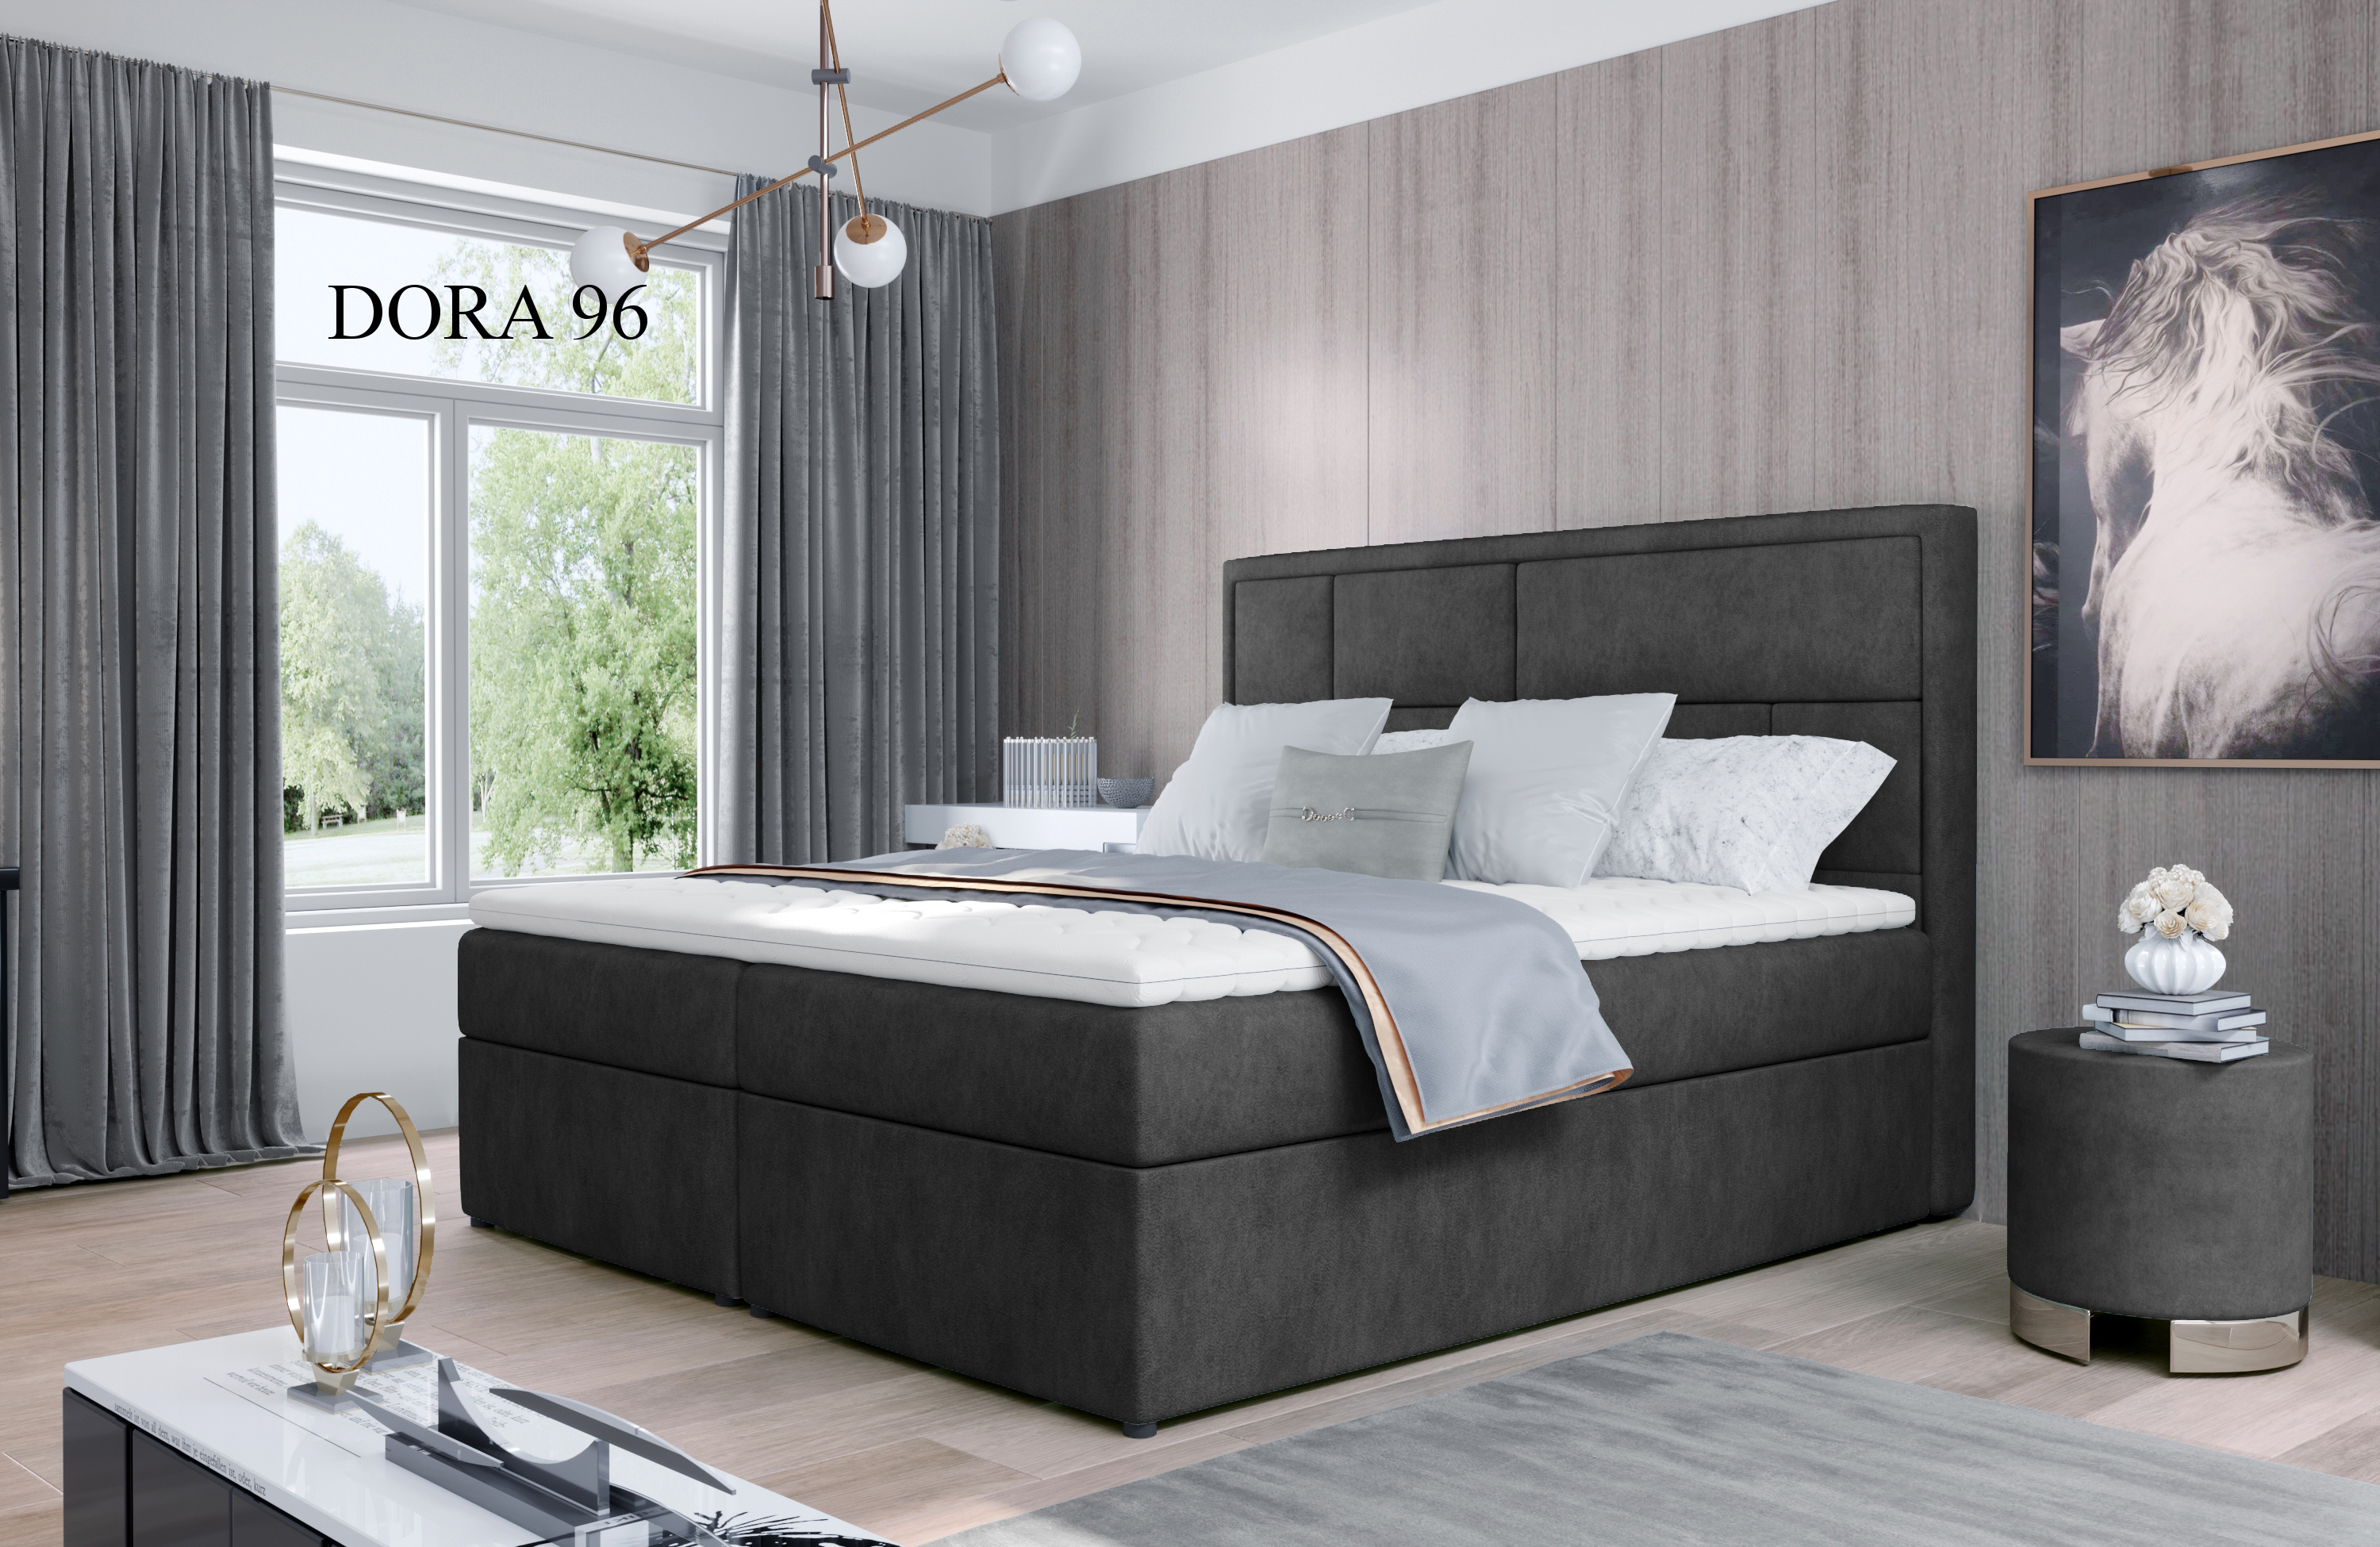 Čalouněná postel MERON Boxsprings 180 x 200 cm Provedení: Dora 96